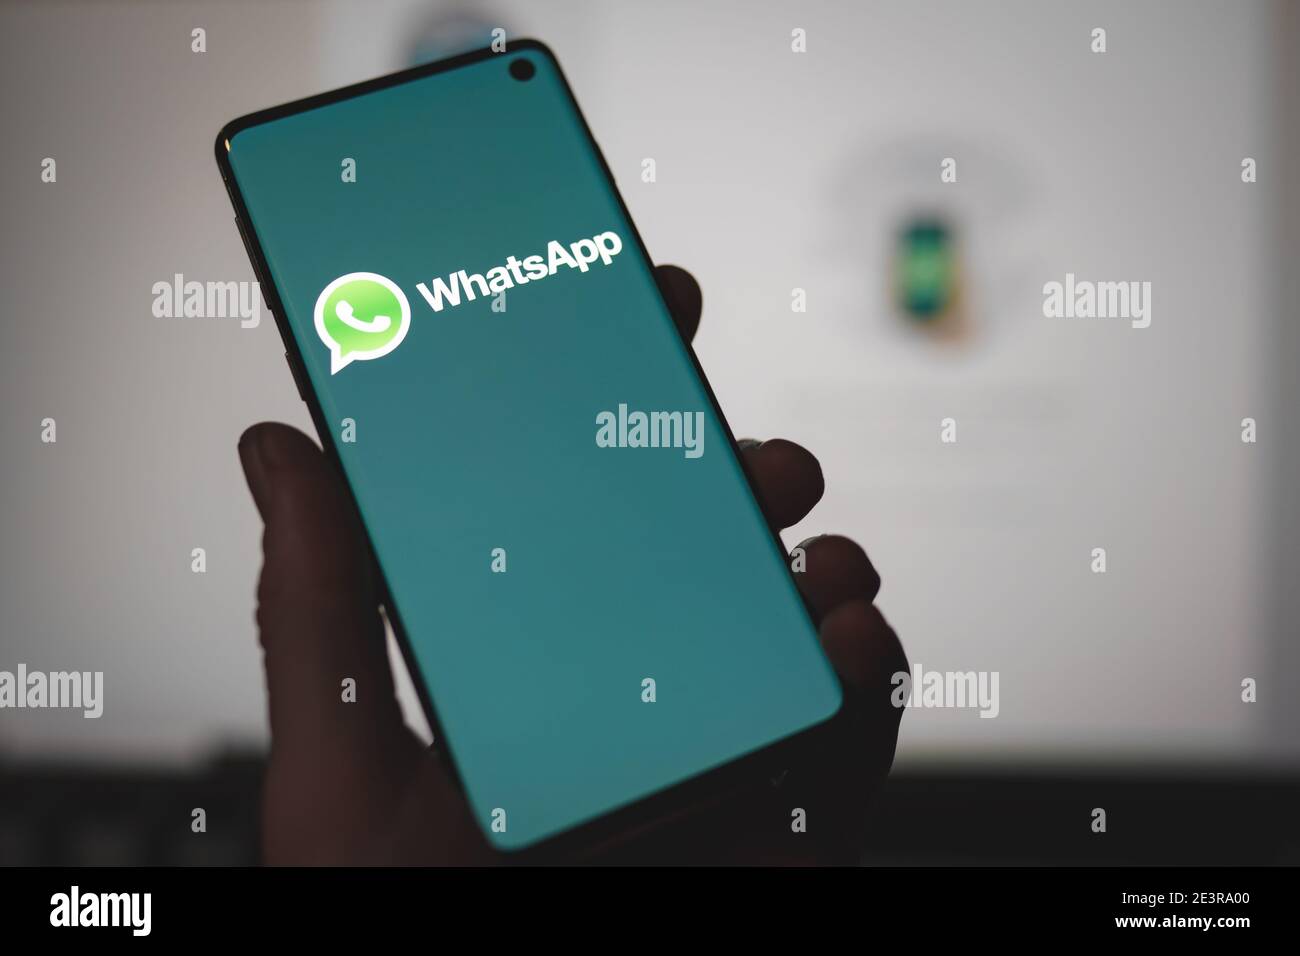 Homme tenant un smartphone avec le logo de l'application Whatsapp Messenger affiché Sur l'écran en face de la version Web de Whatsapp Banque D'Images